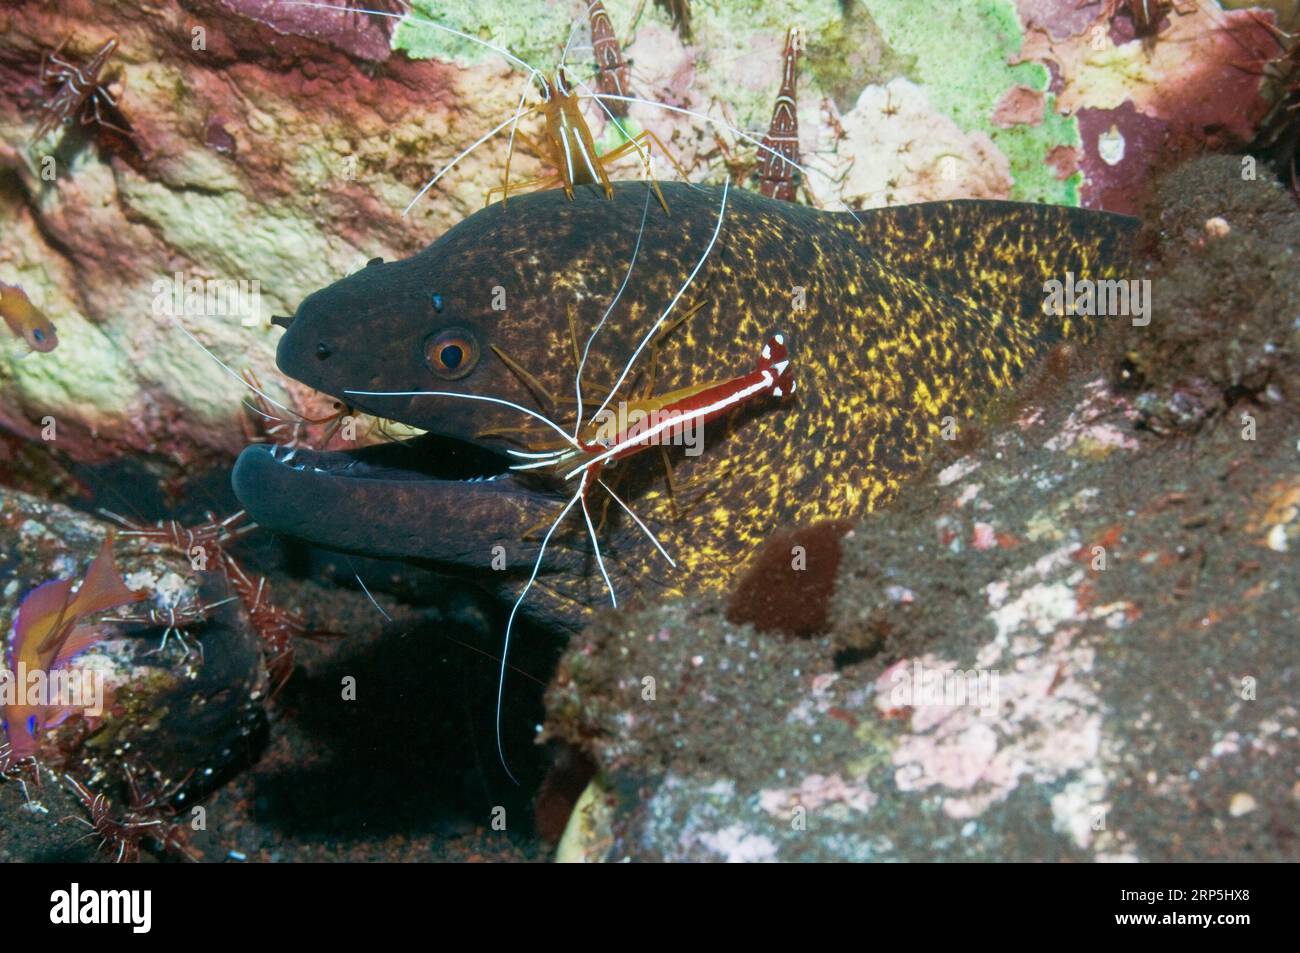 La morue à marge jaune (Gymnothorax flavimarginatus) est nettoyée par deux crevettes nettoyeuses à dos boisé et des crevettes à bec articulé Durban. Indonésie Banque D'Images